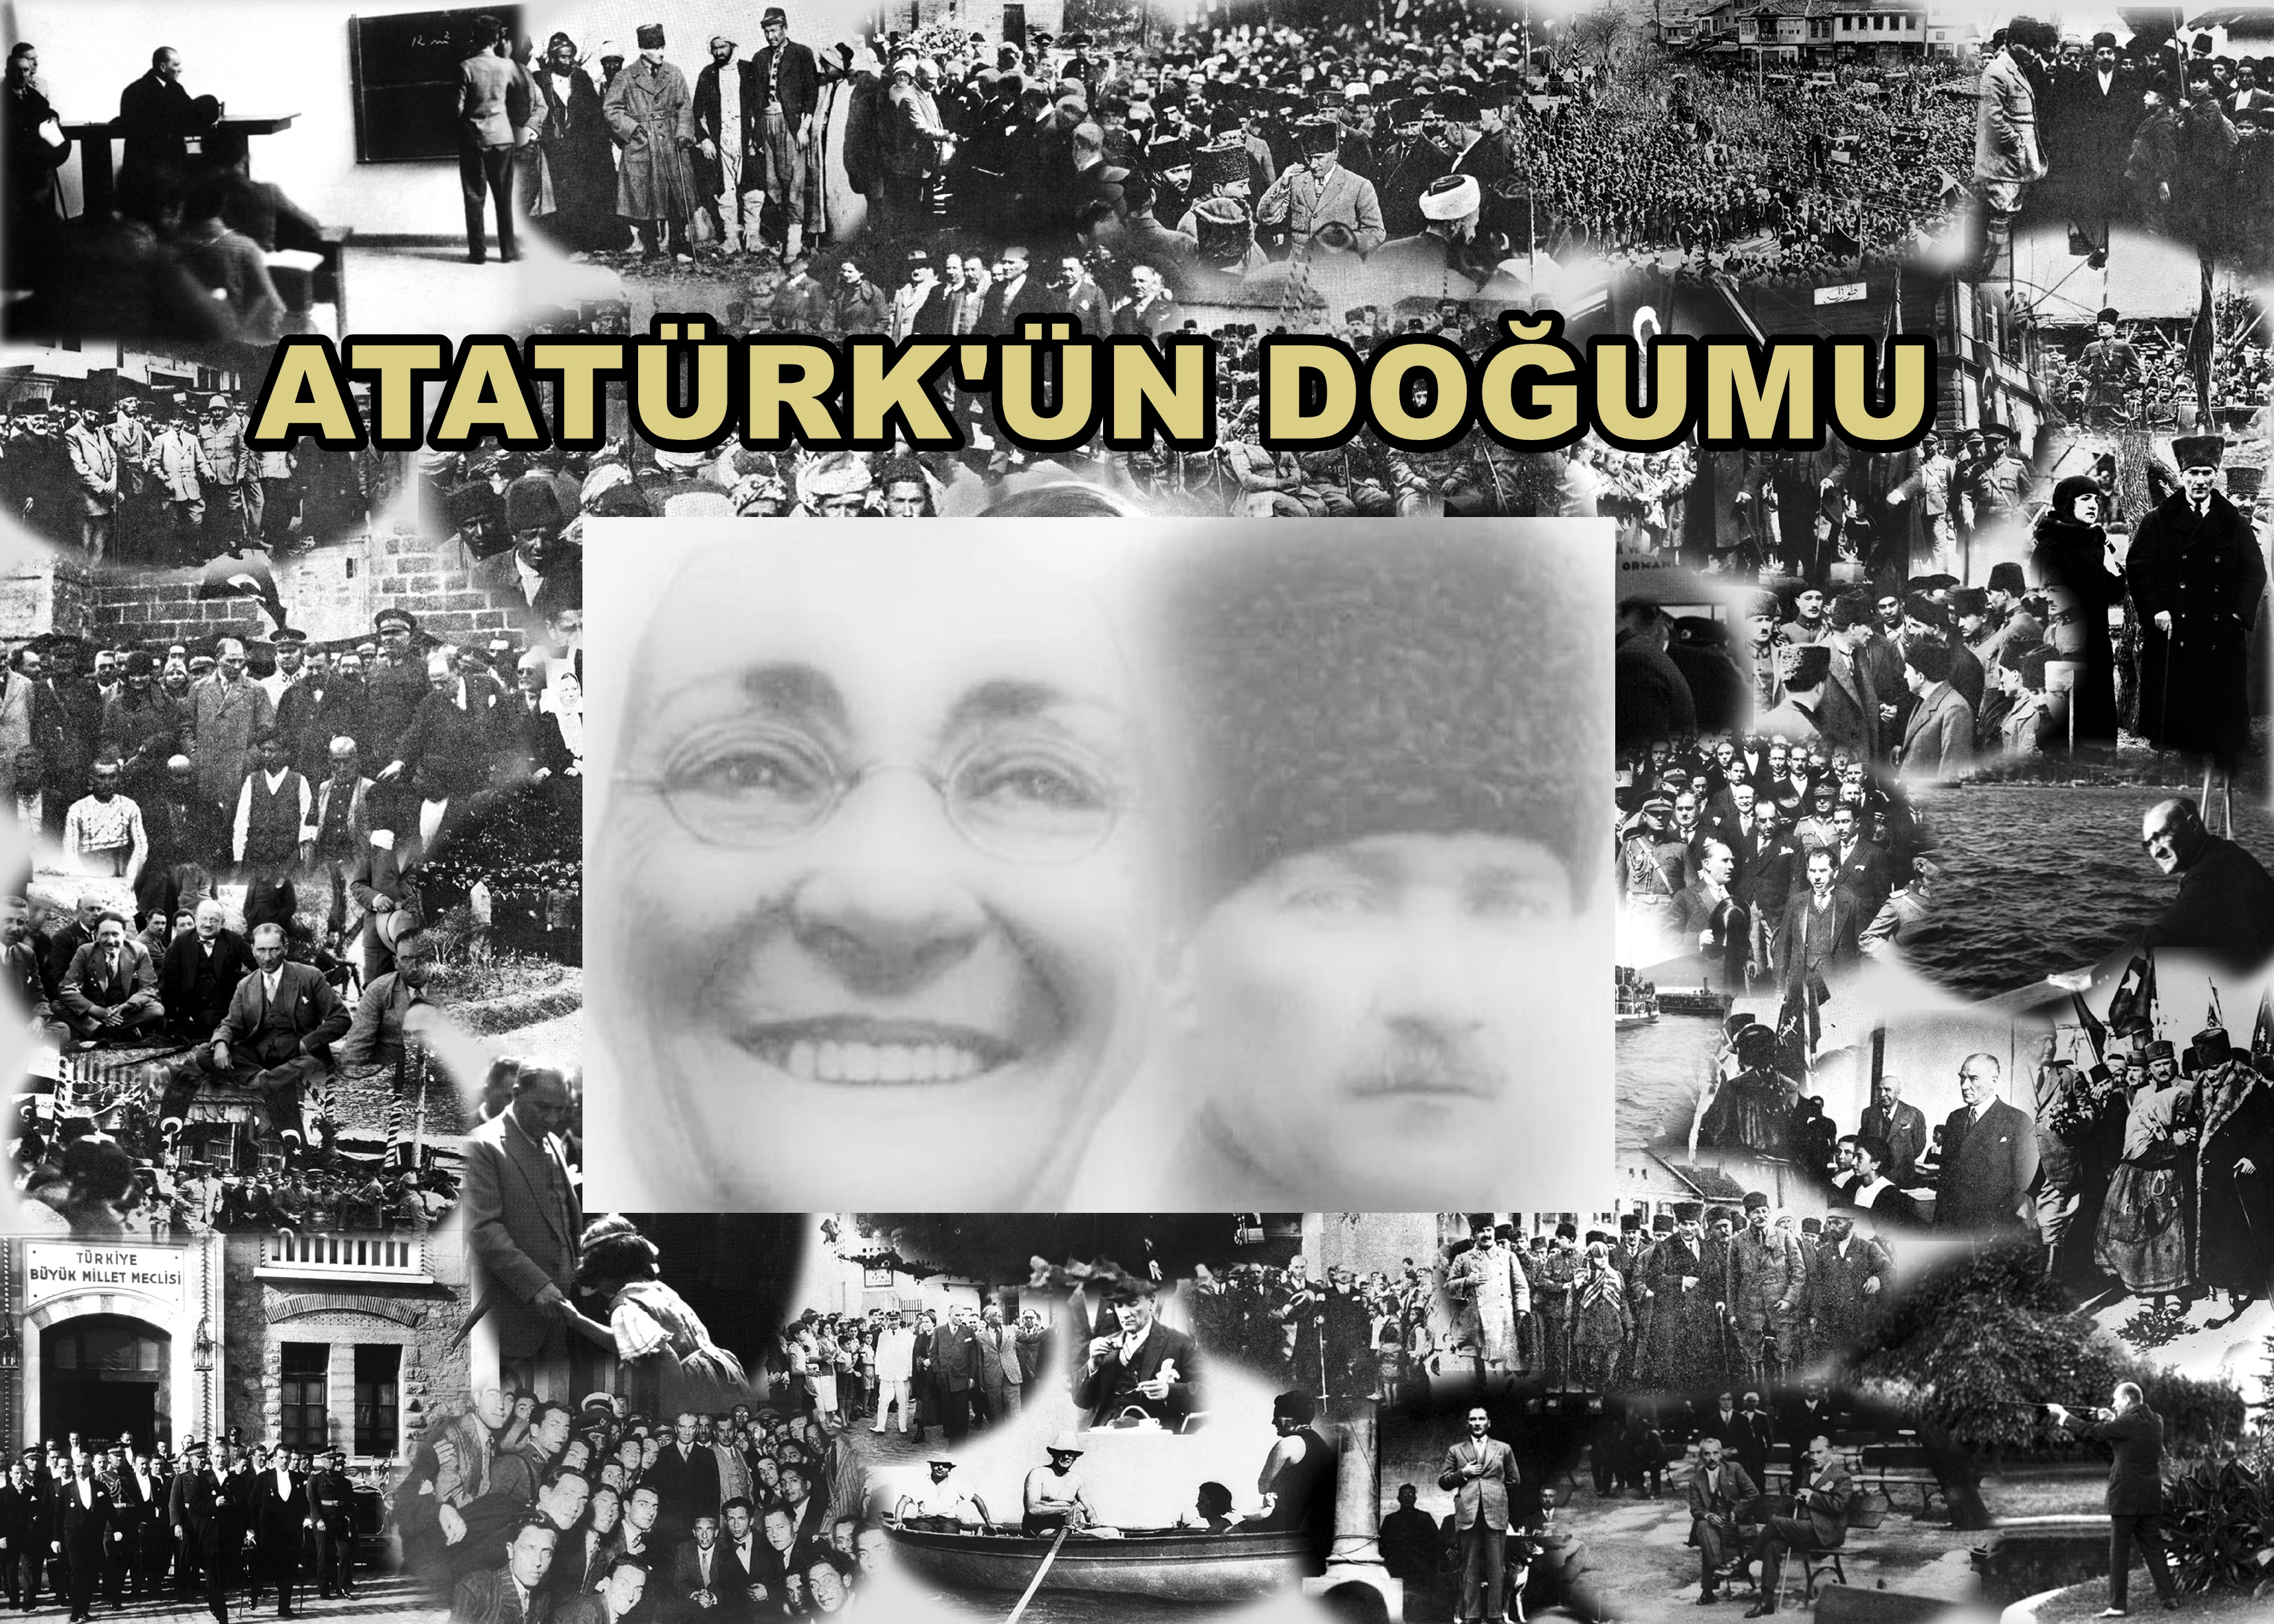 Atatürk's Birth, 1881